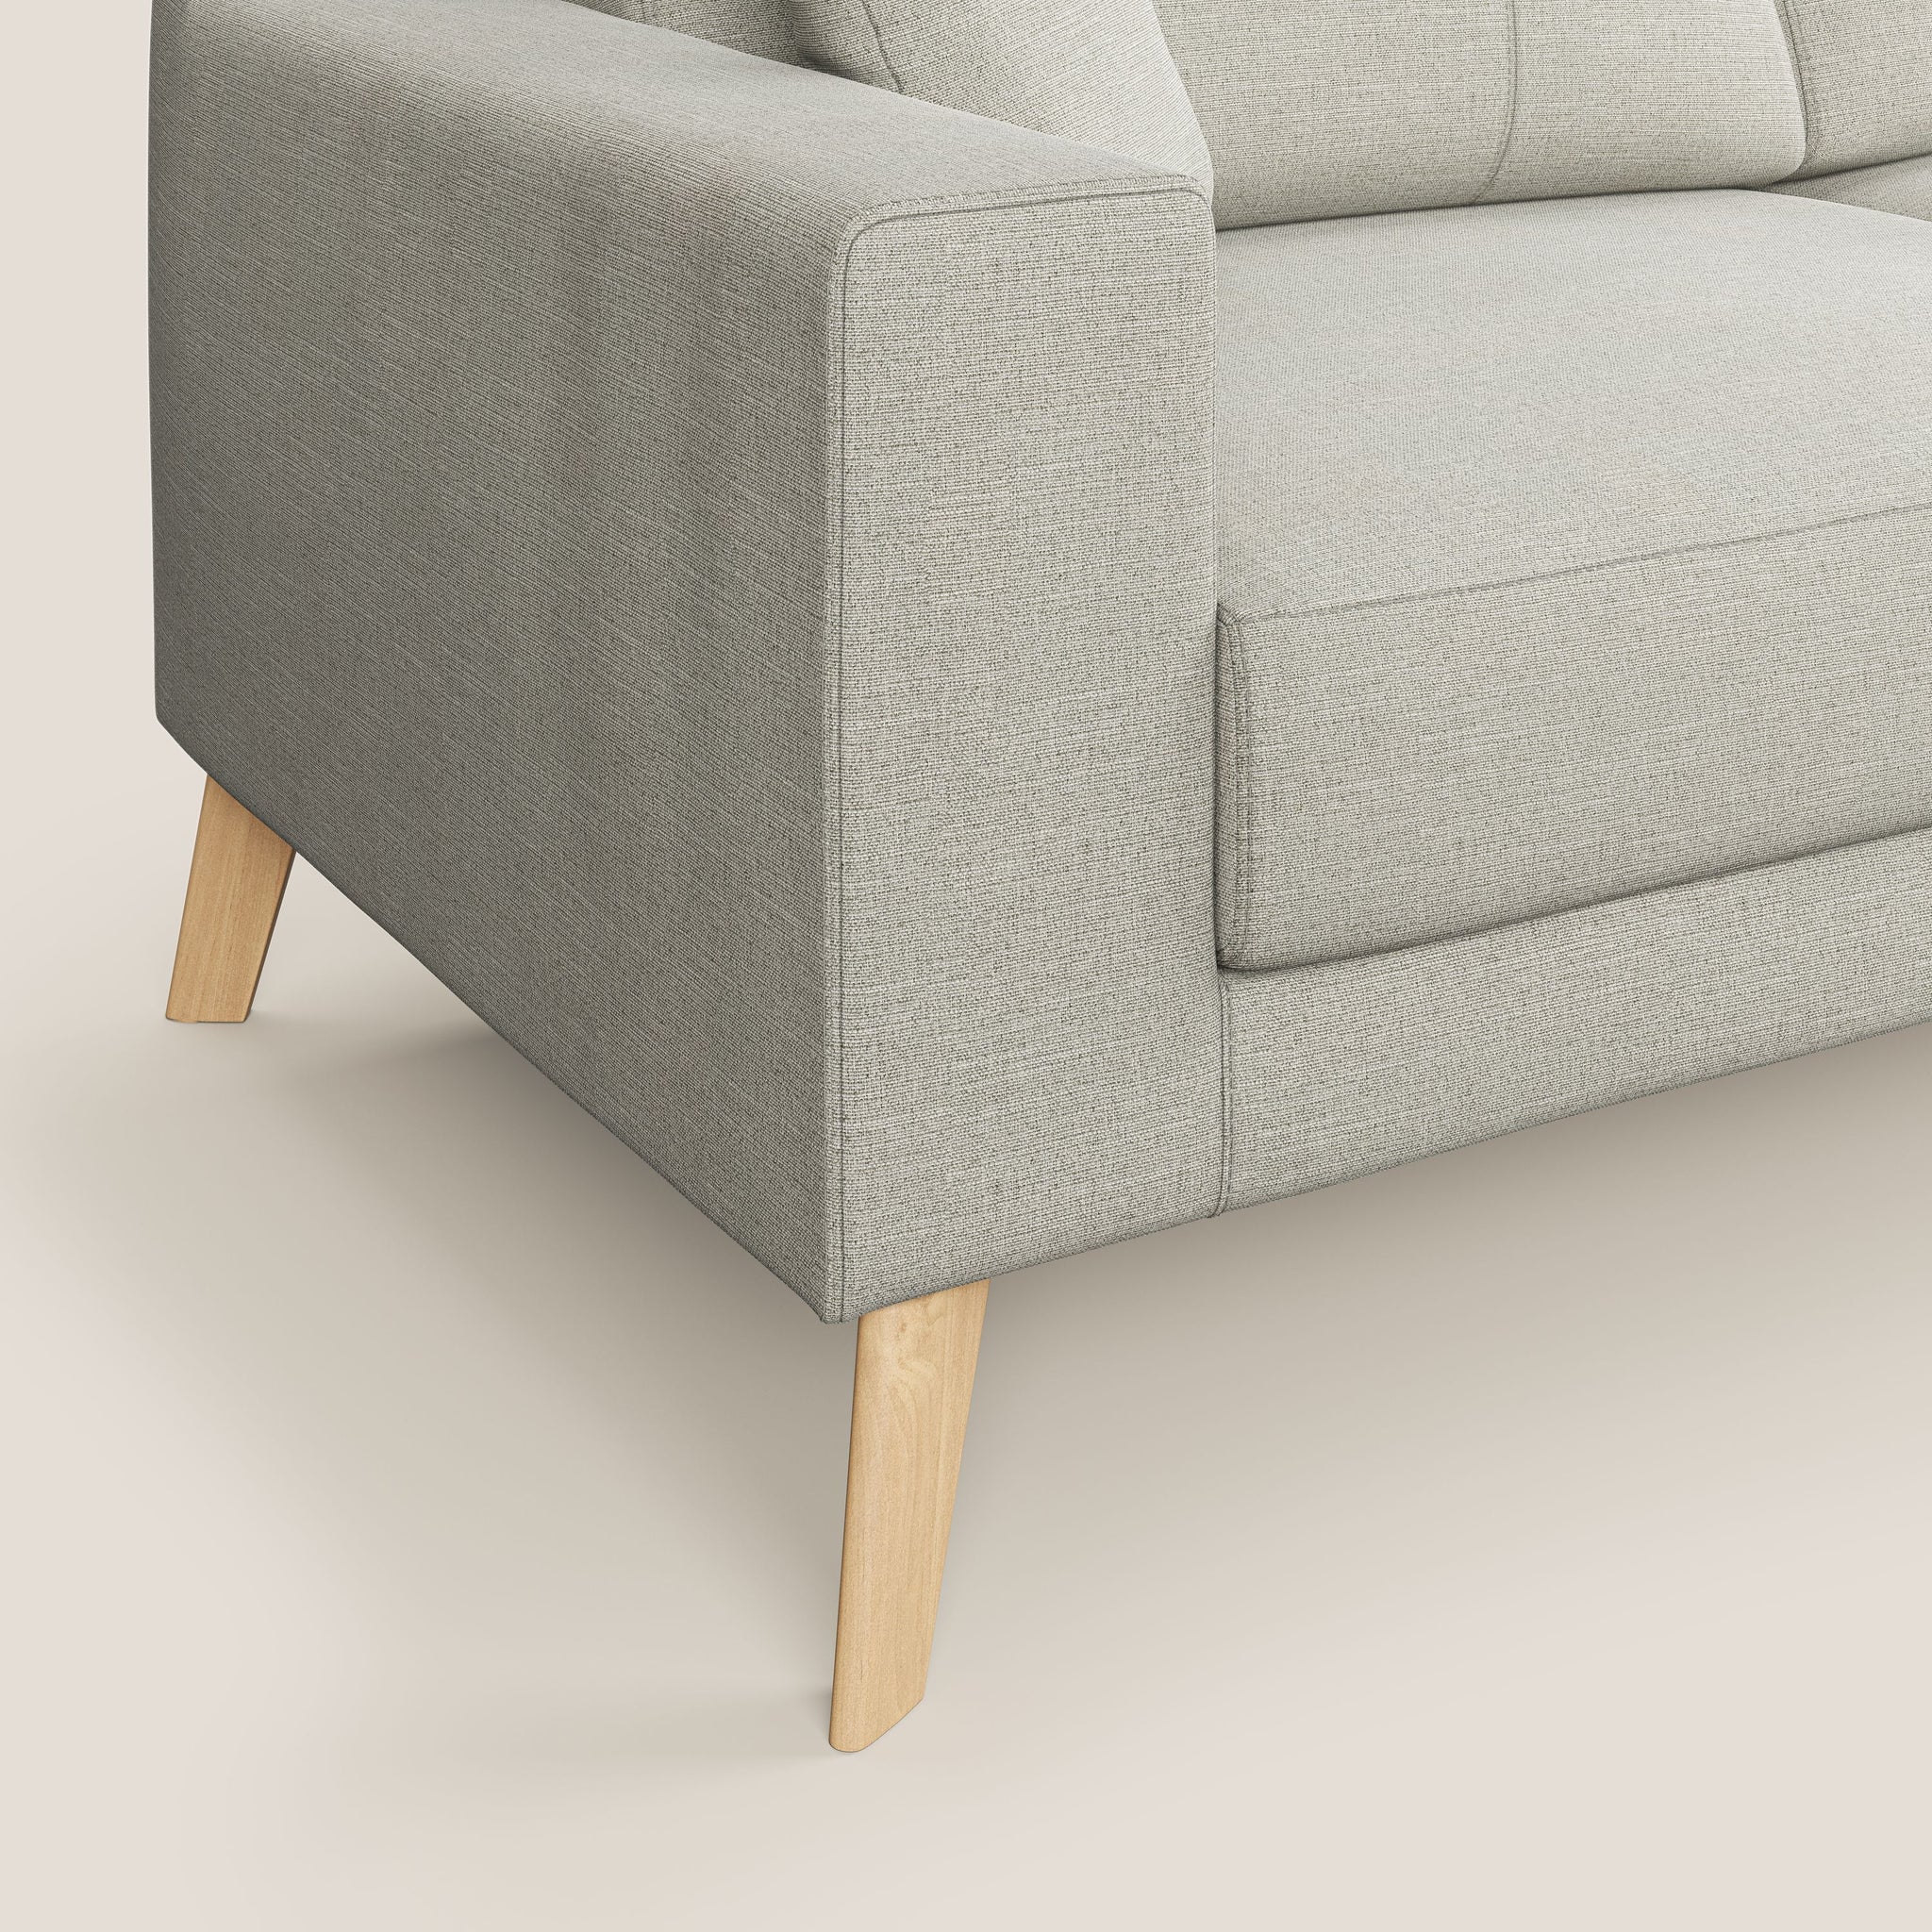 Danish divano moderno in tessuto Ecosostenibile